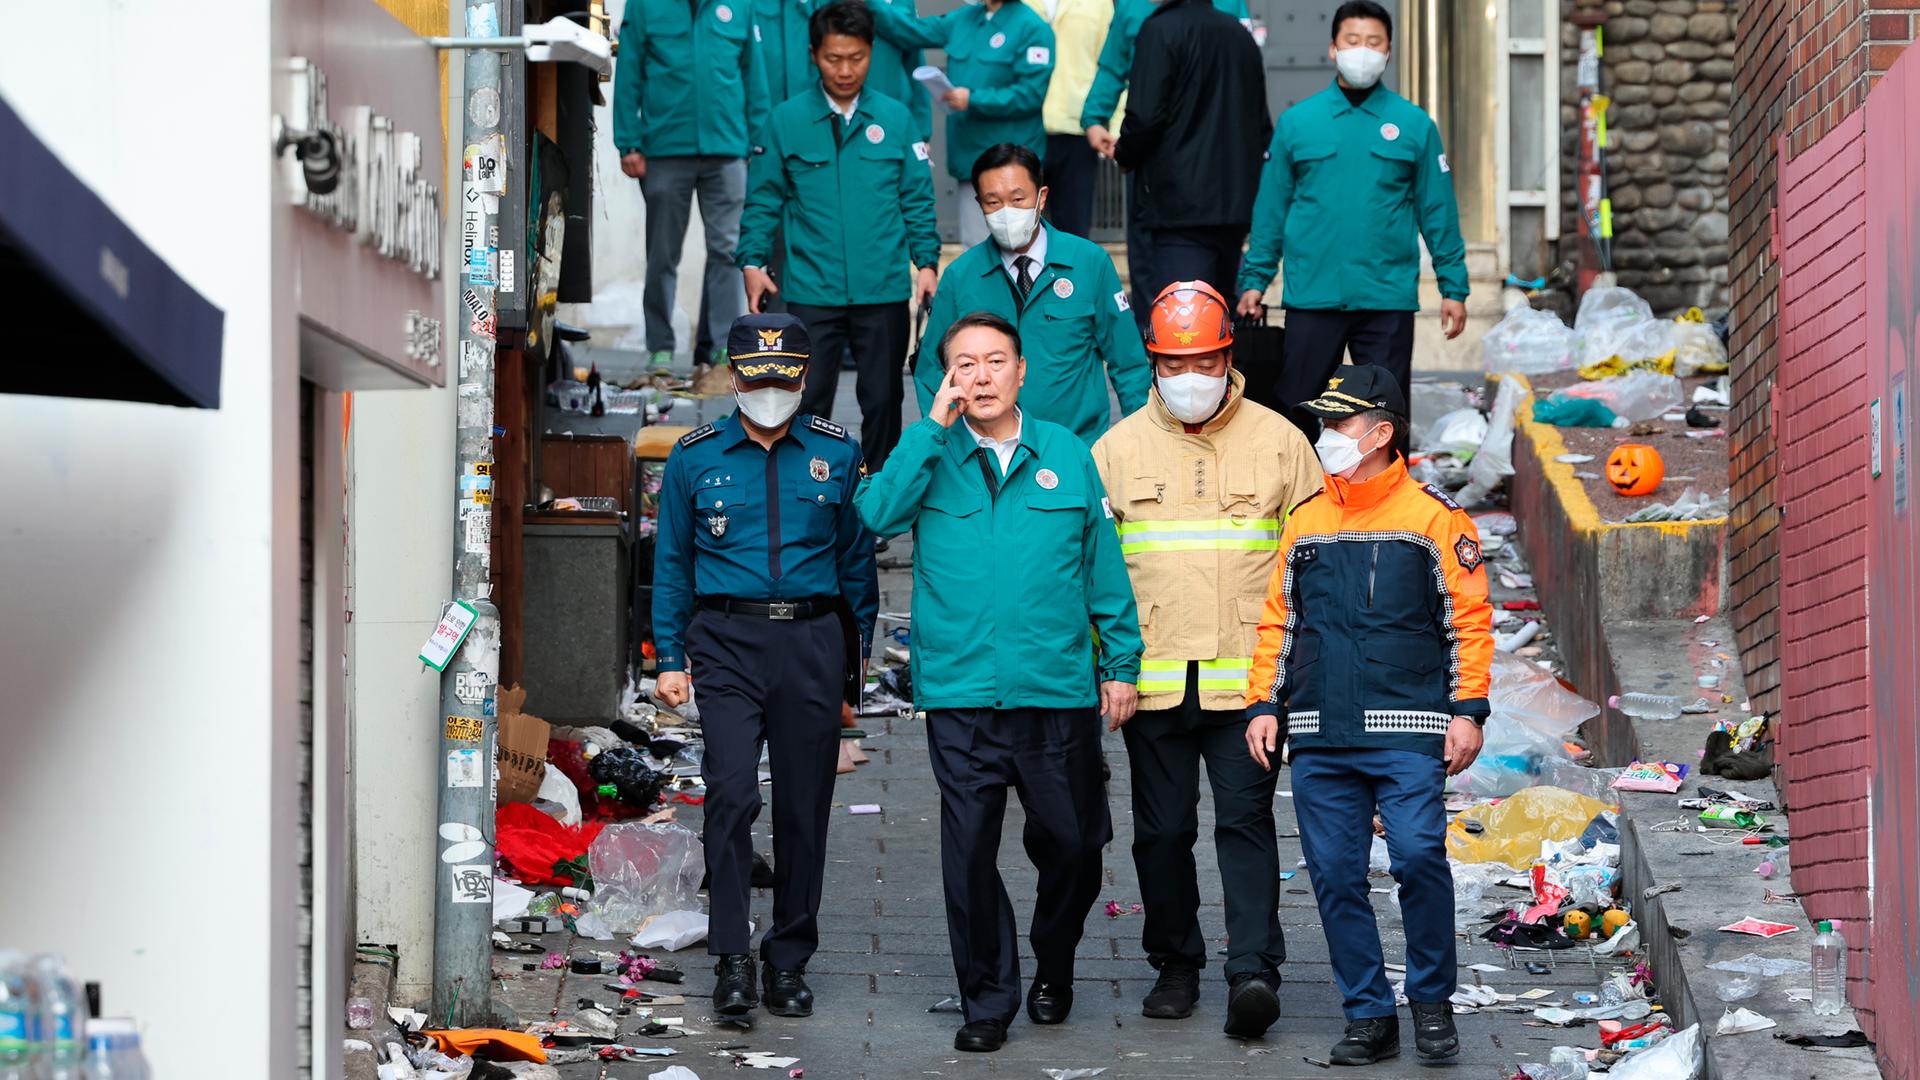 Mehrere Männer, darunter ein Polizist und ein Feuerwehrmann, gehen durch eine enge Gasse, an deren Rändern Abfall liegt. Sie begleiten den südkoreanischen Präsidenten bei dessen Besuch am Unglücksort.